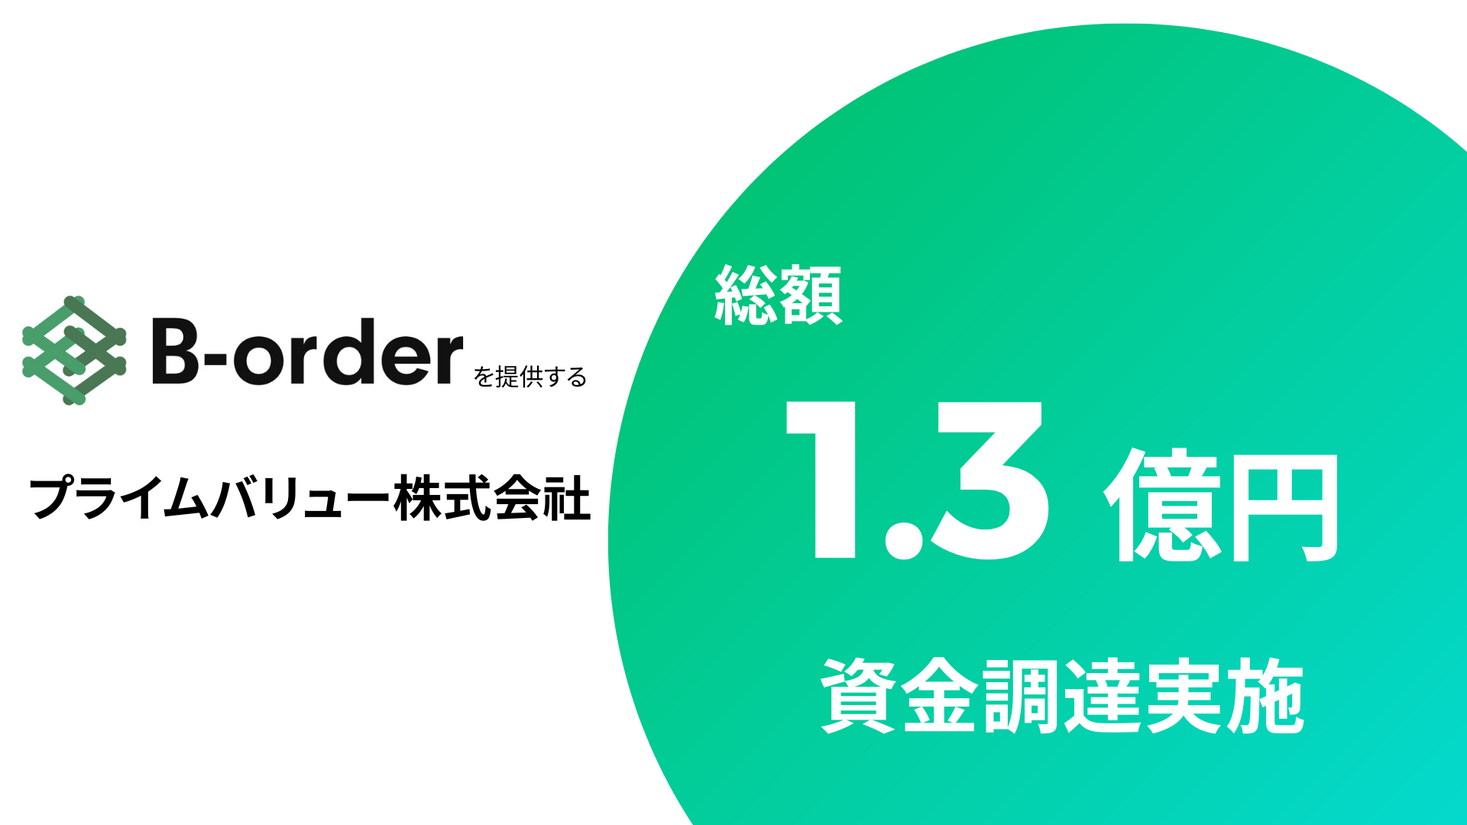 防災DXサービス「B-order」を運営するプライムバリュー、第三者割当増資にて約1.3億円の資金調達を実施